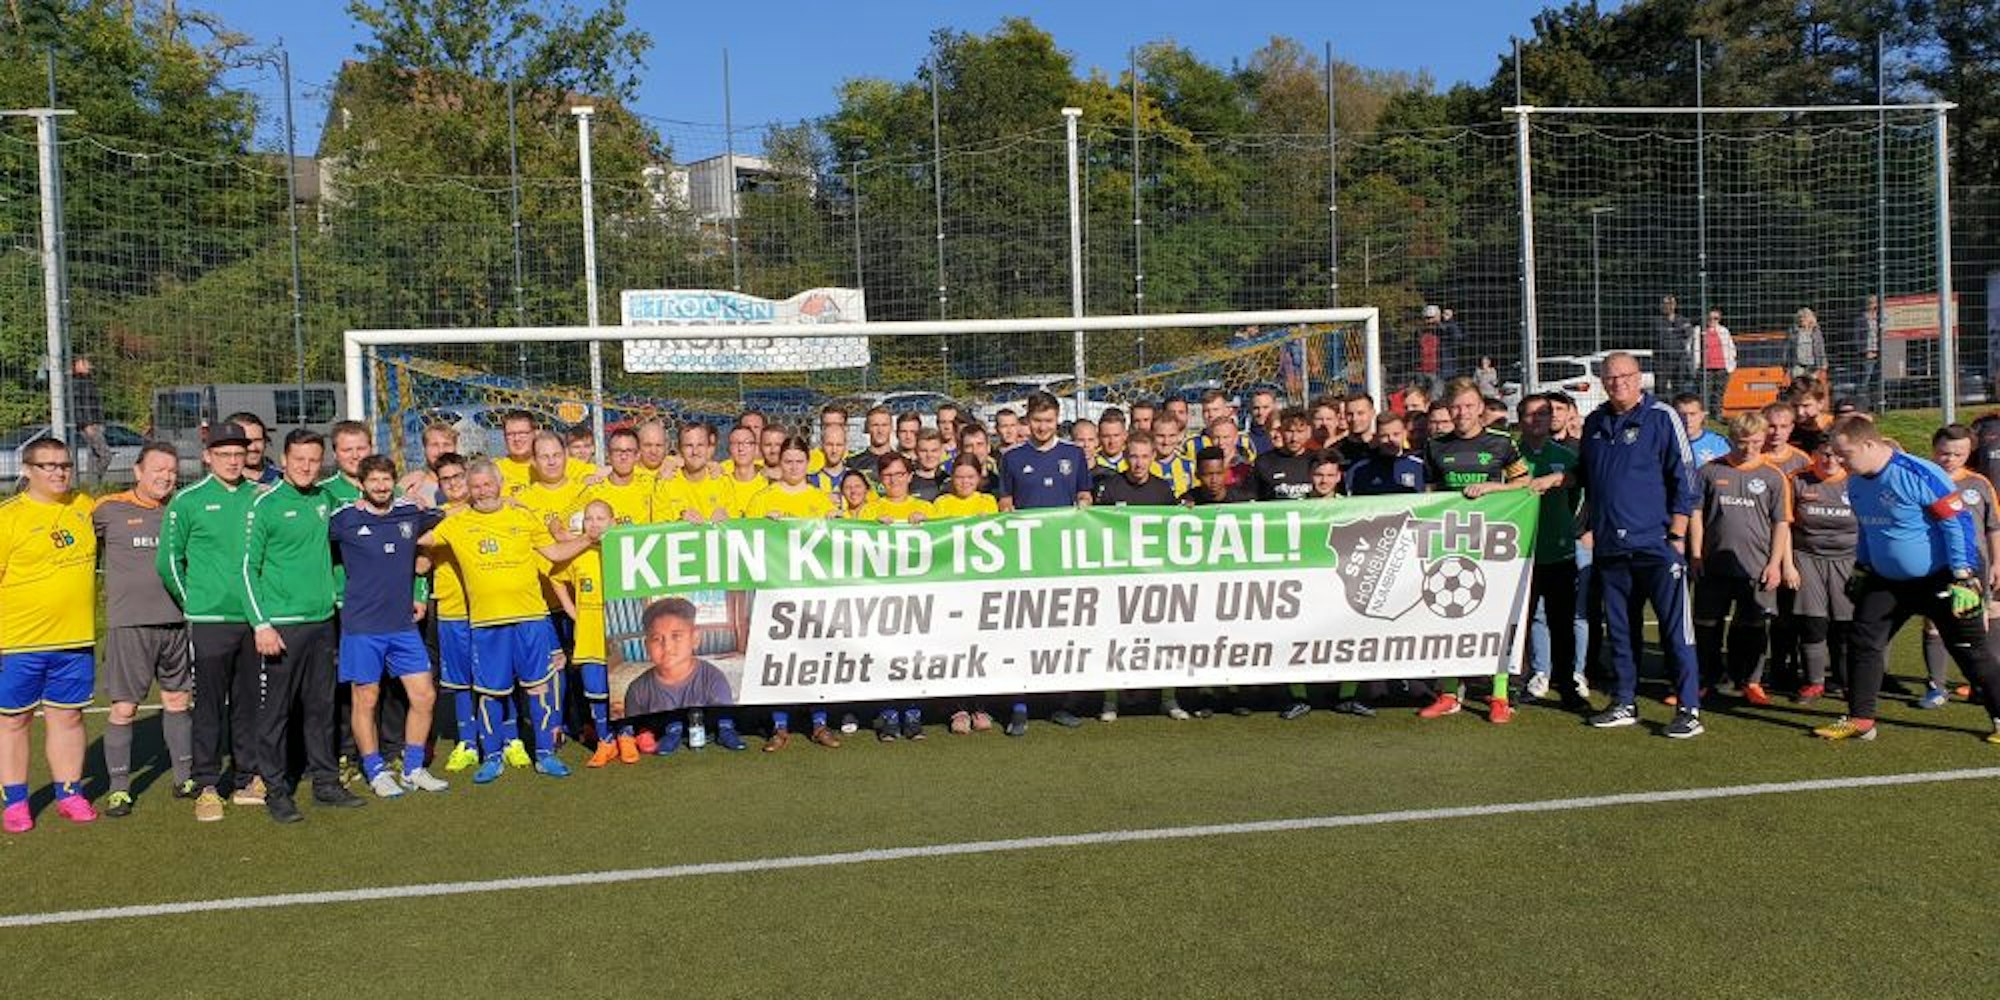 Fußballer von verschiedenen oberbergischen Vereinen zeigten sich am Wochenende solidarisch mit dem kleinen Shayon.